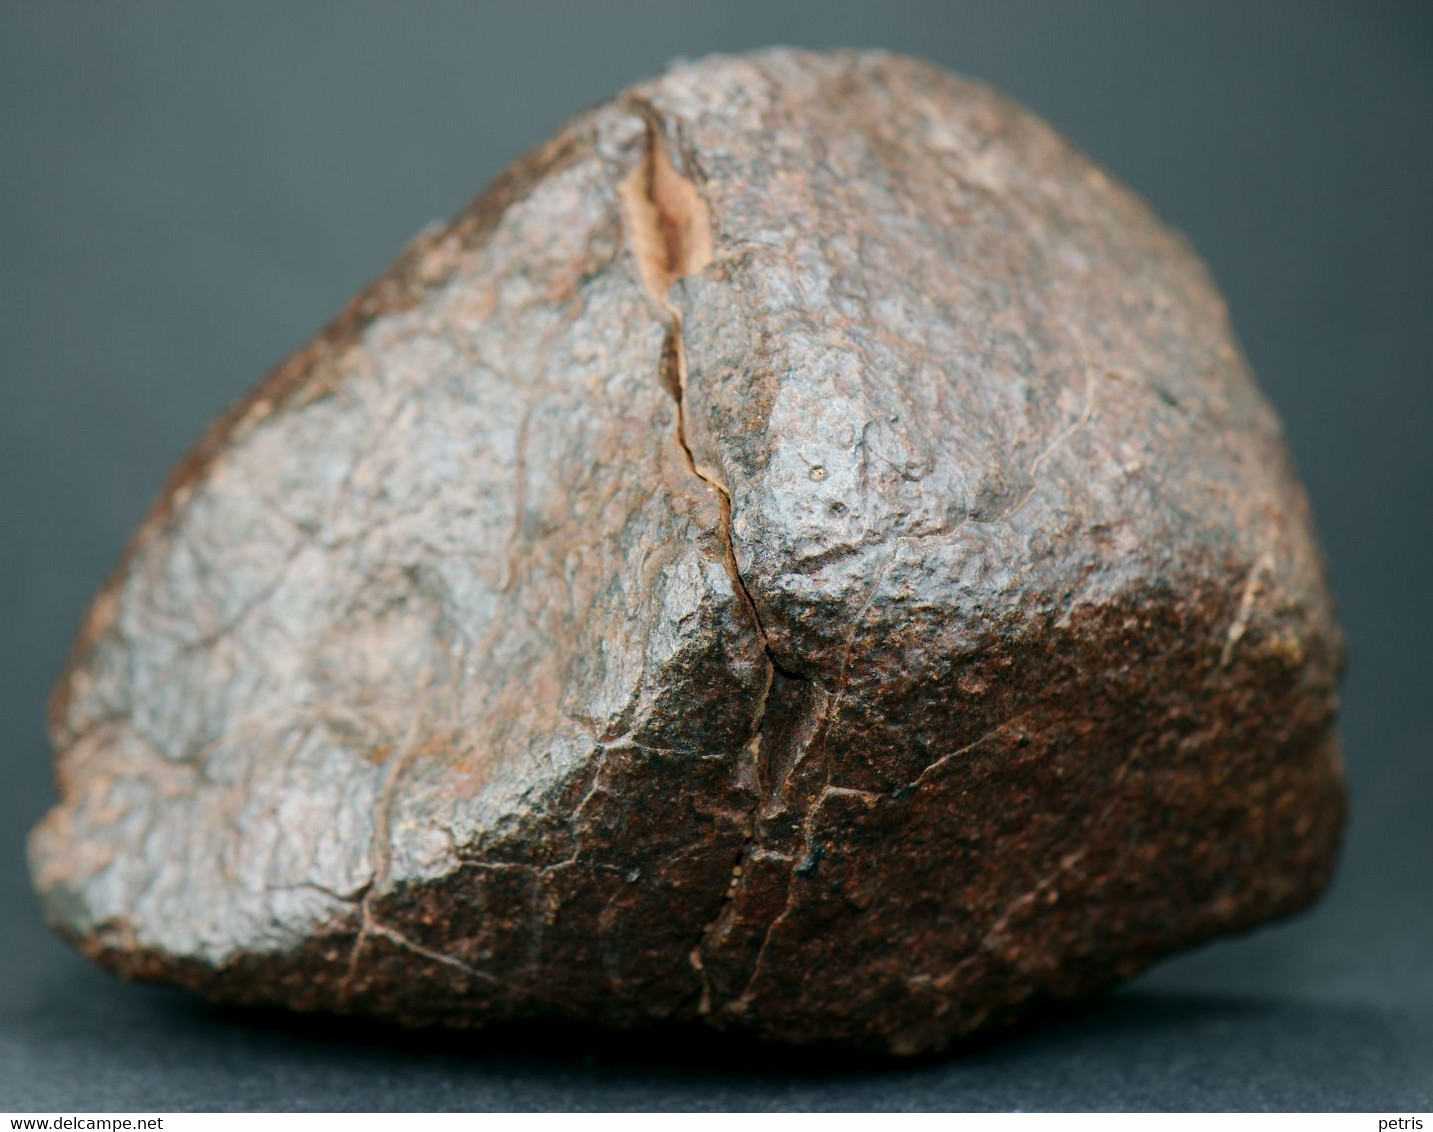 Meteorite NWA (North West Africa) - 314 gr